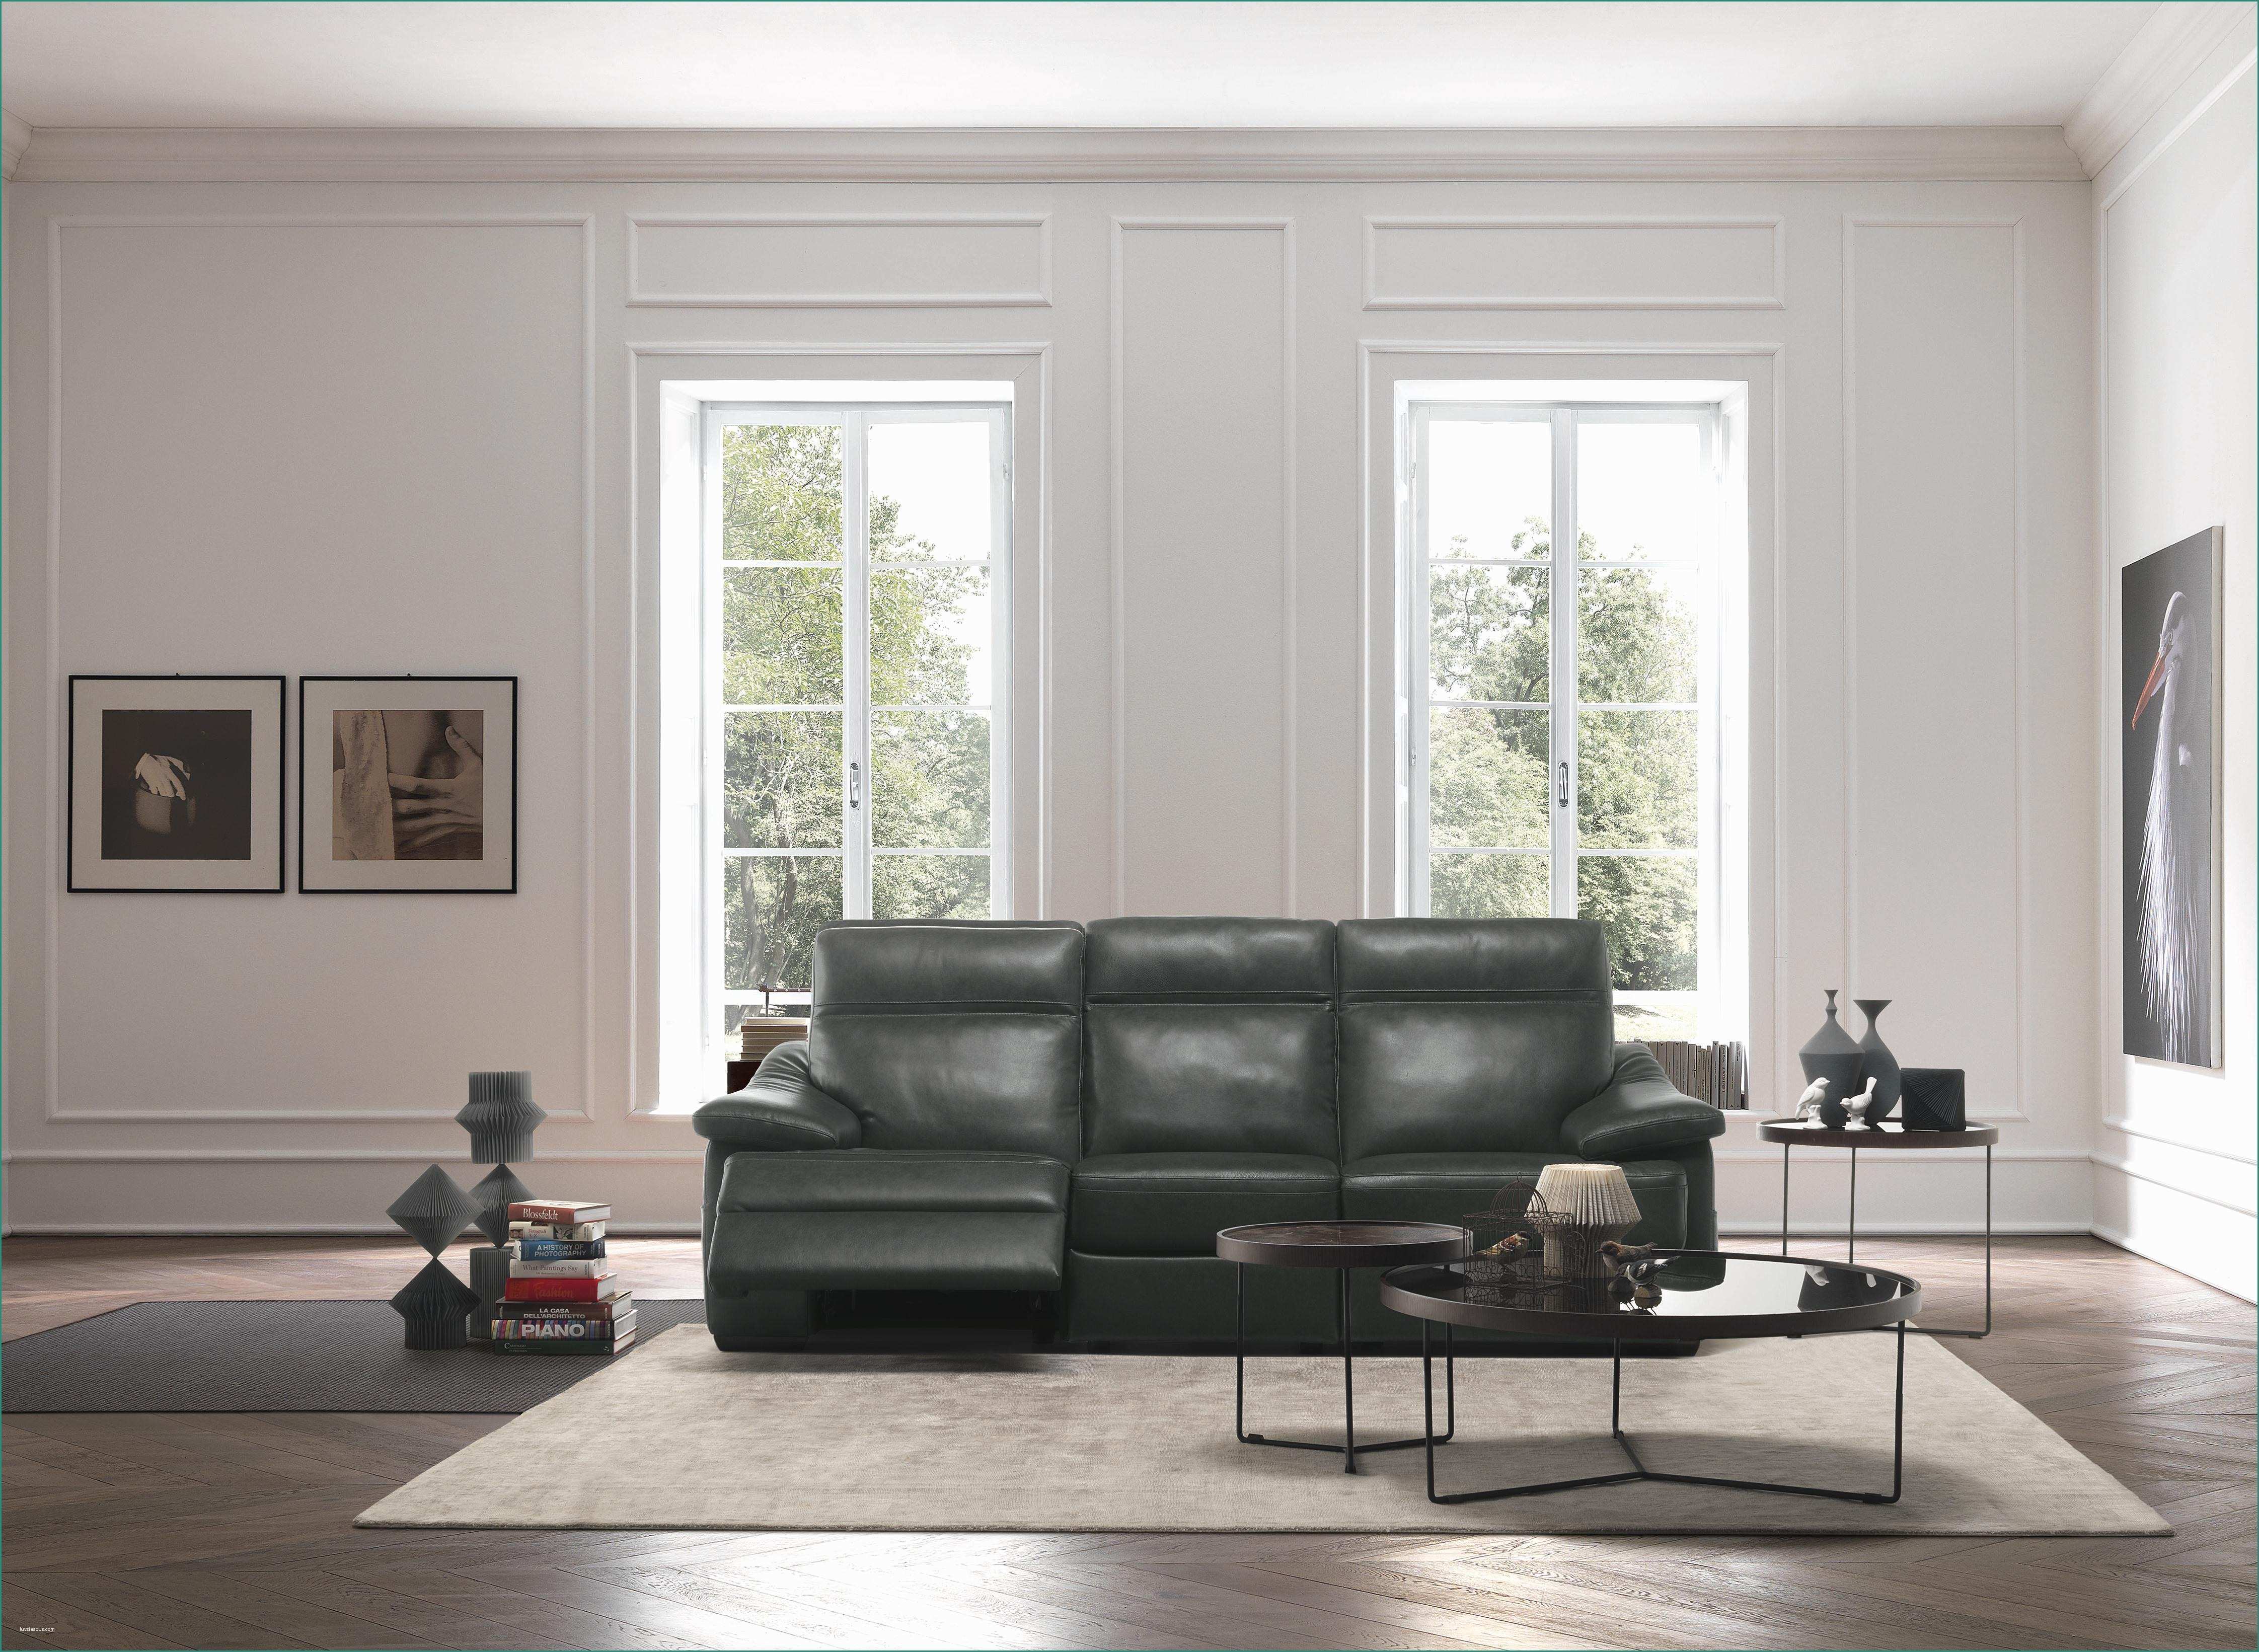 Poltrone E sofa Corsico E Natuzzi – Milano Home Furnishings